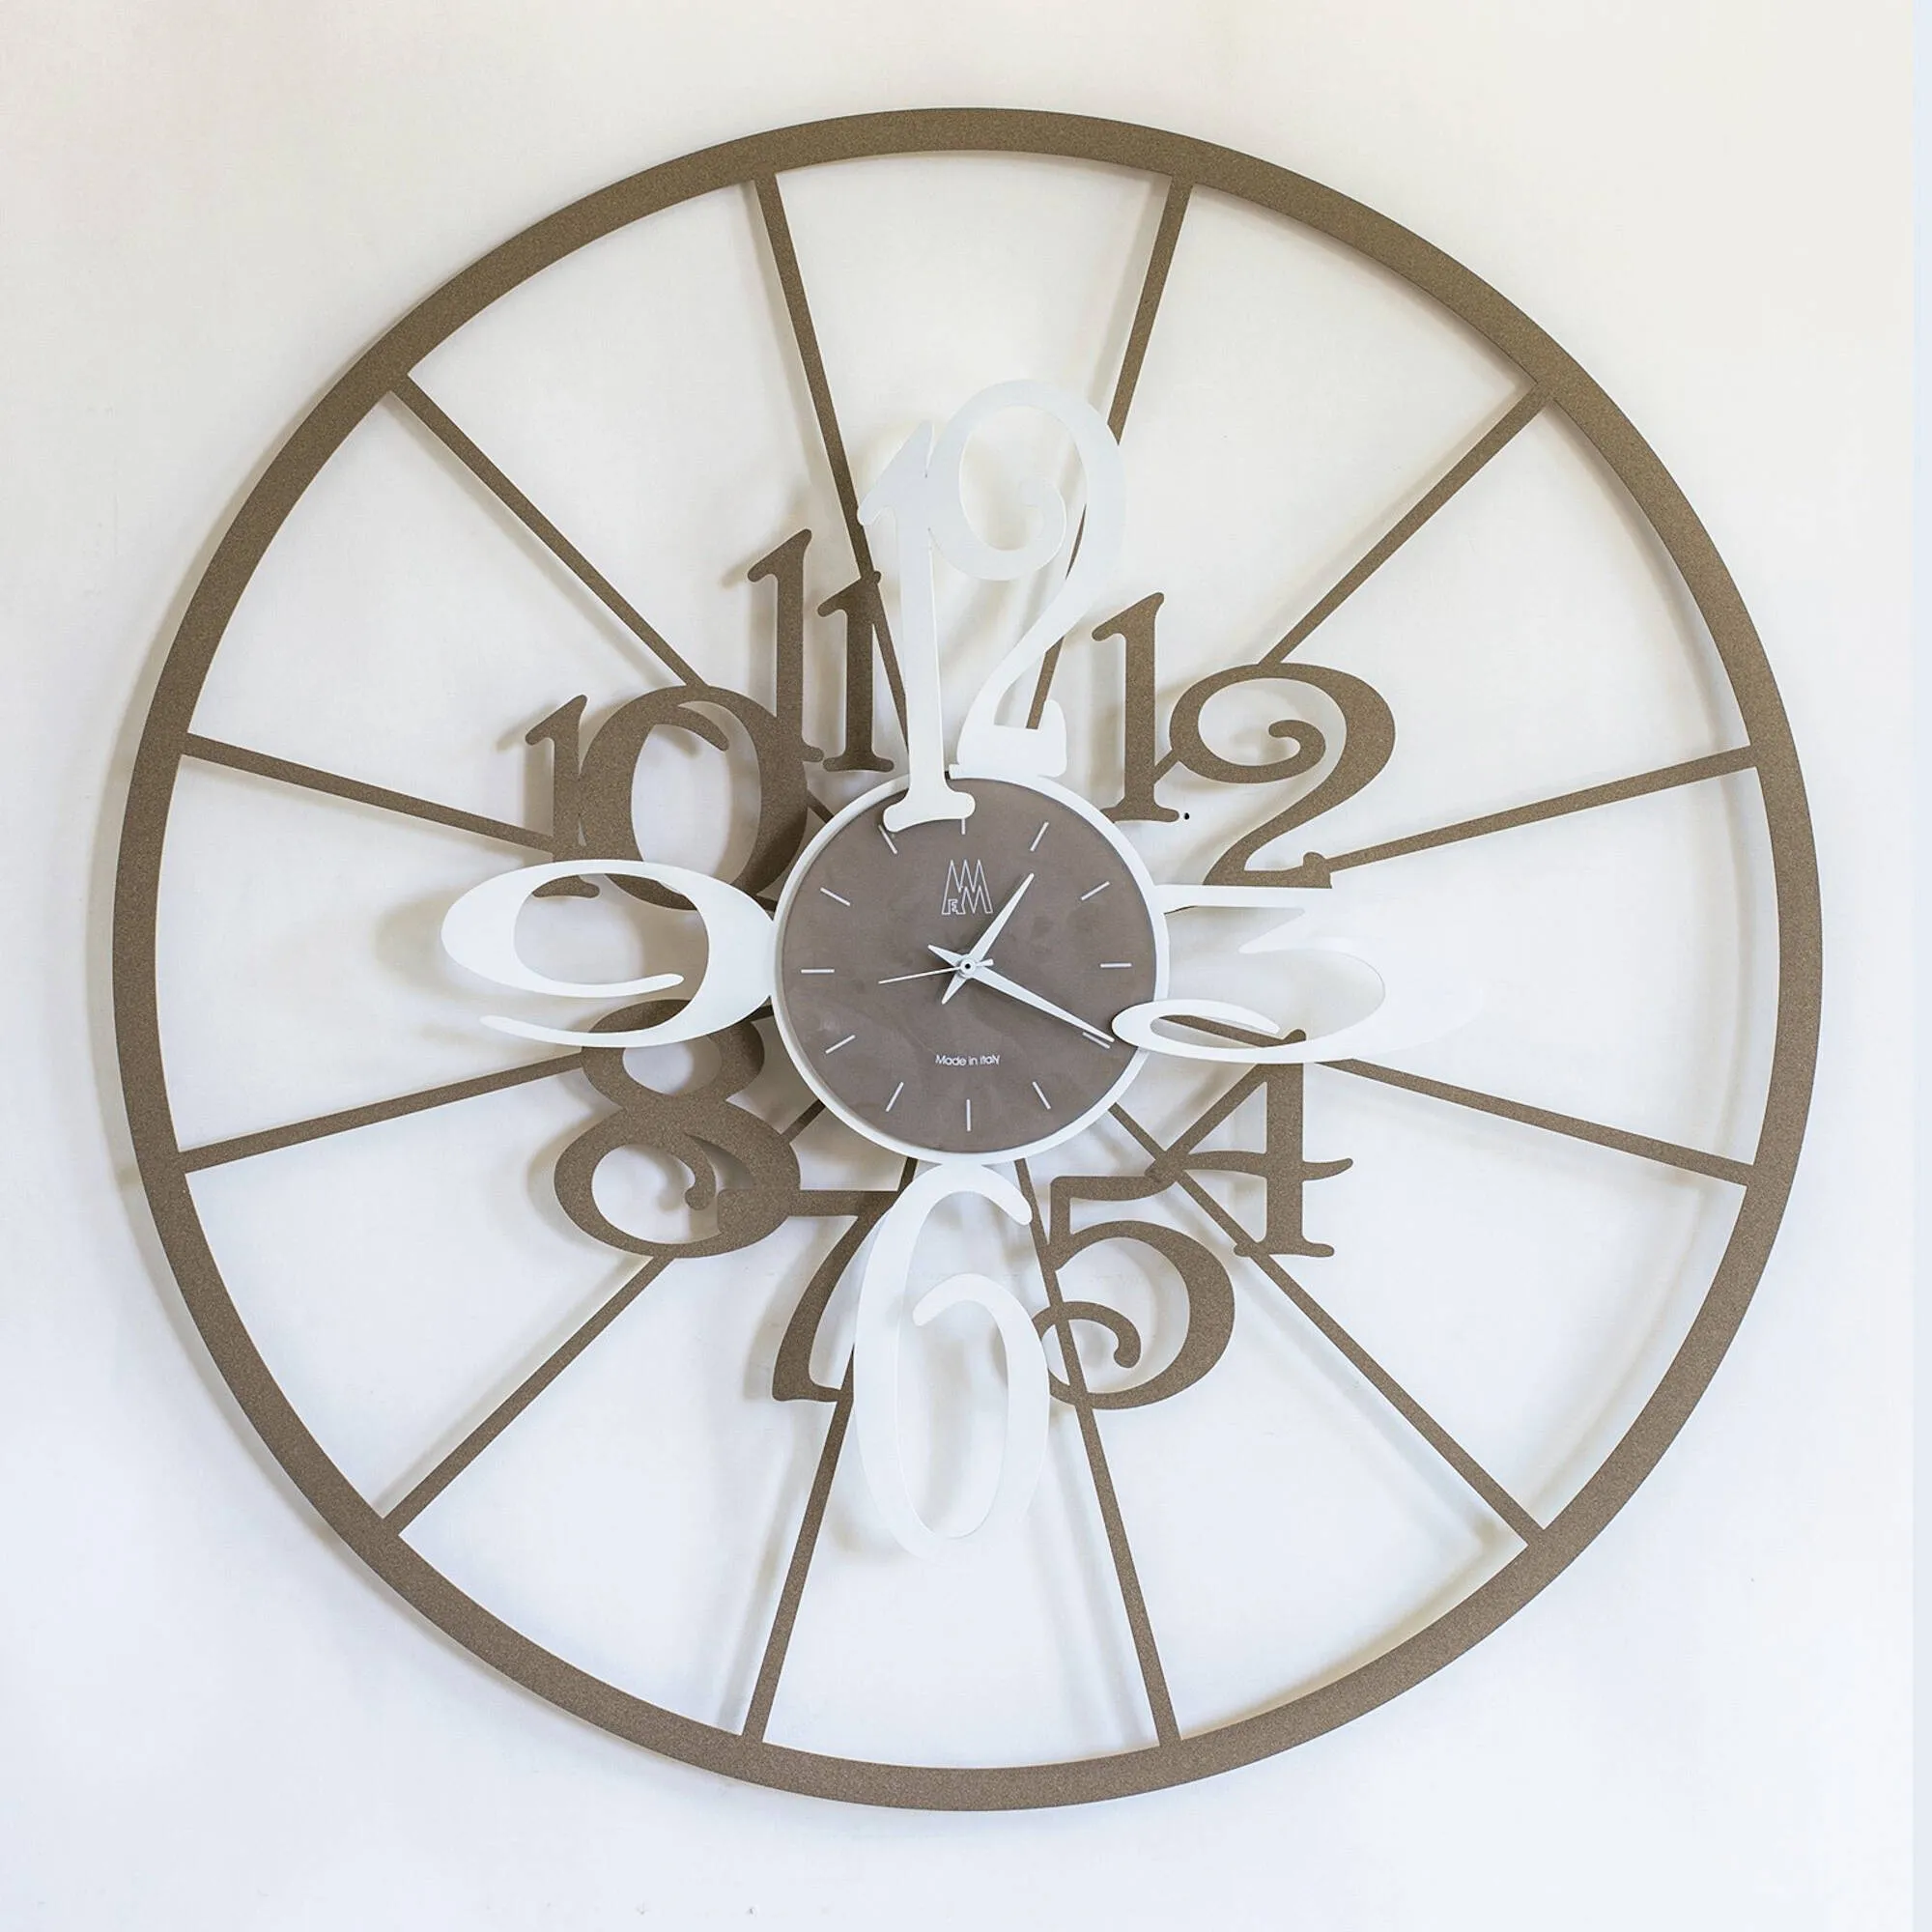 Orologio Kalesy in metallo, diam.70, colore Beige-bianco